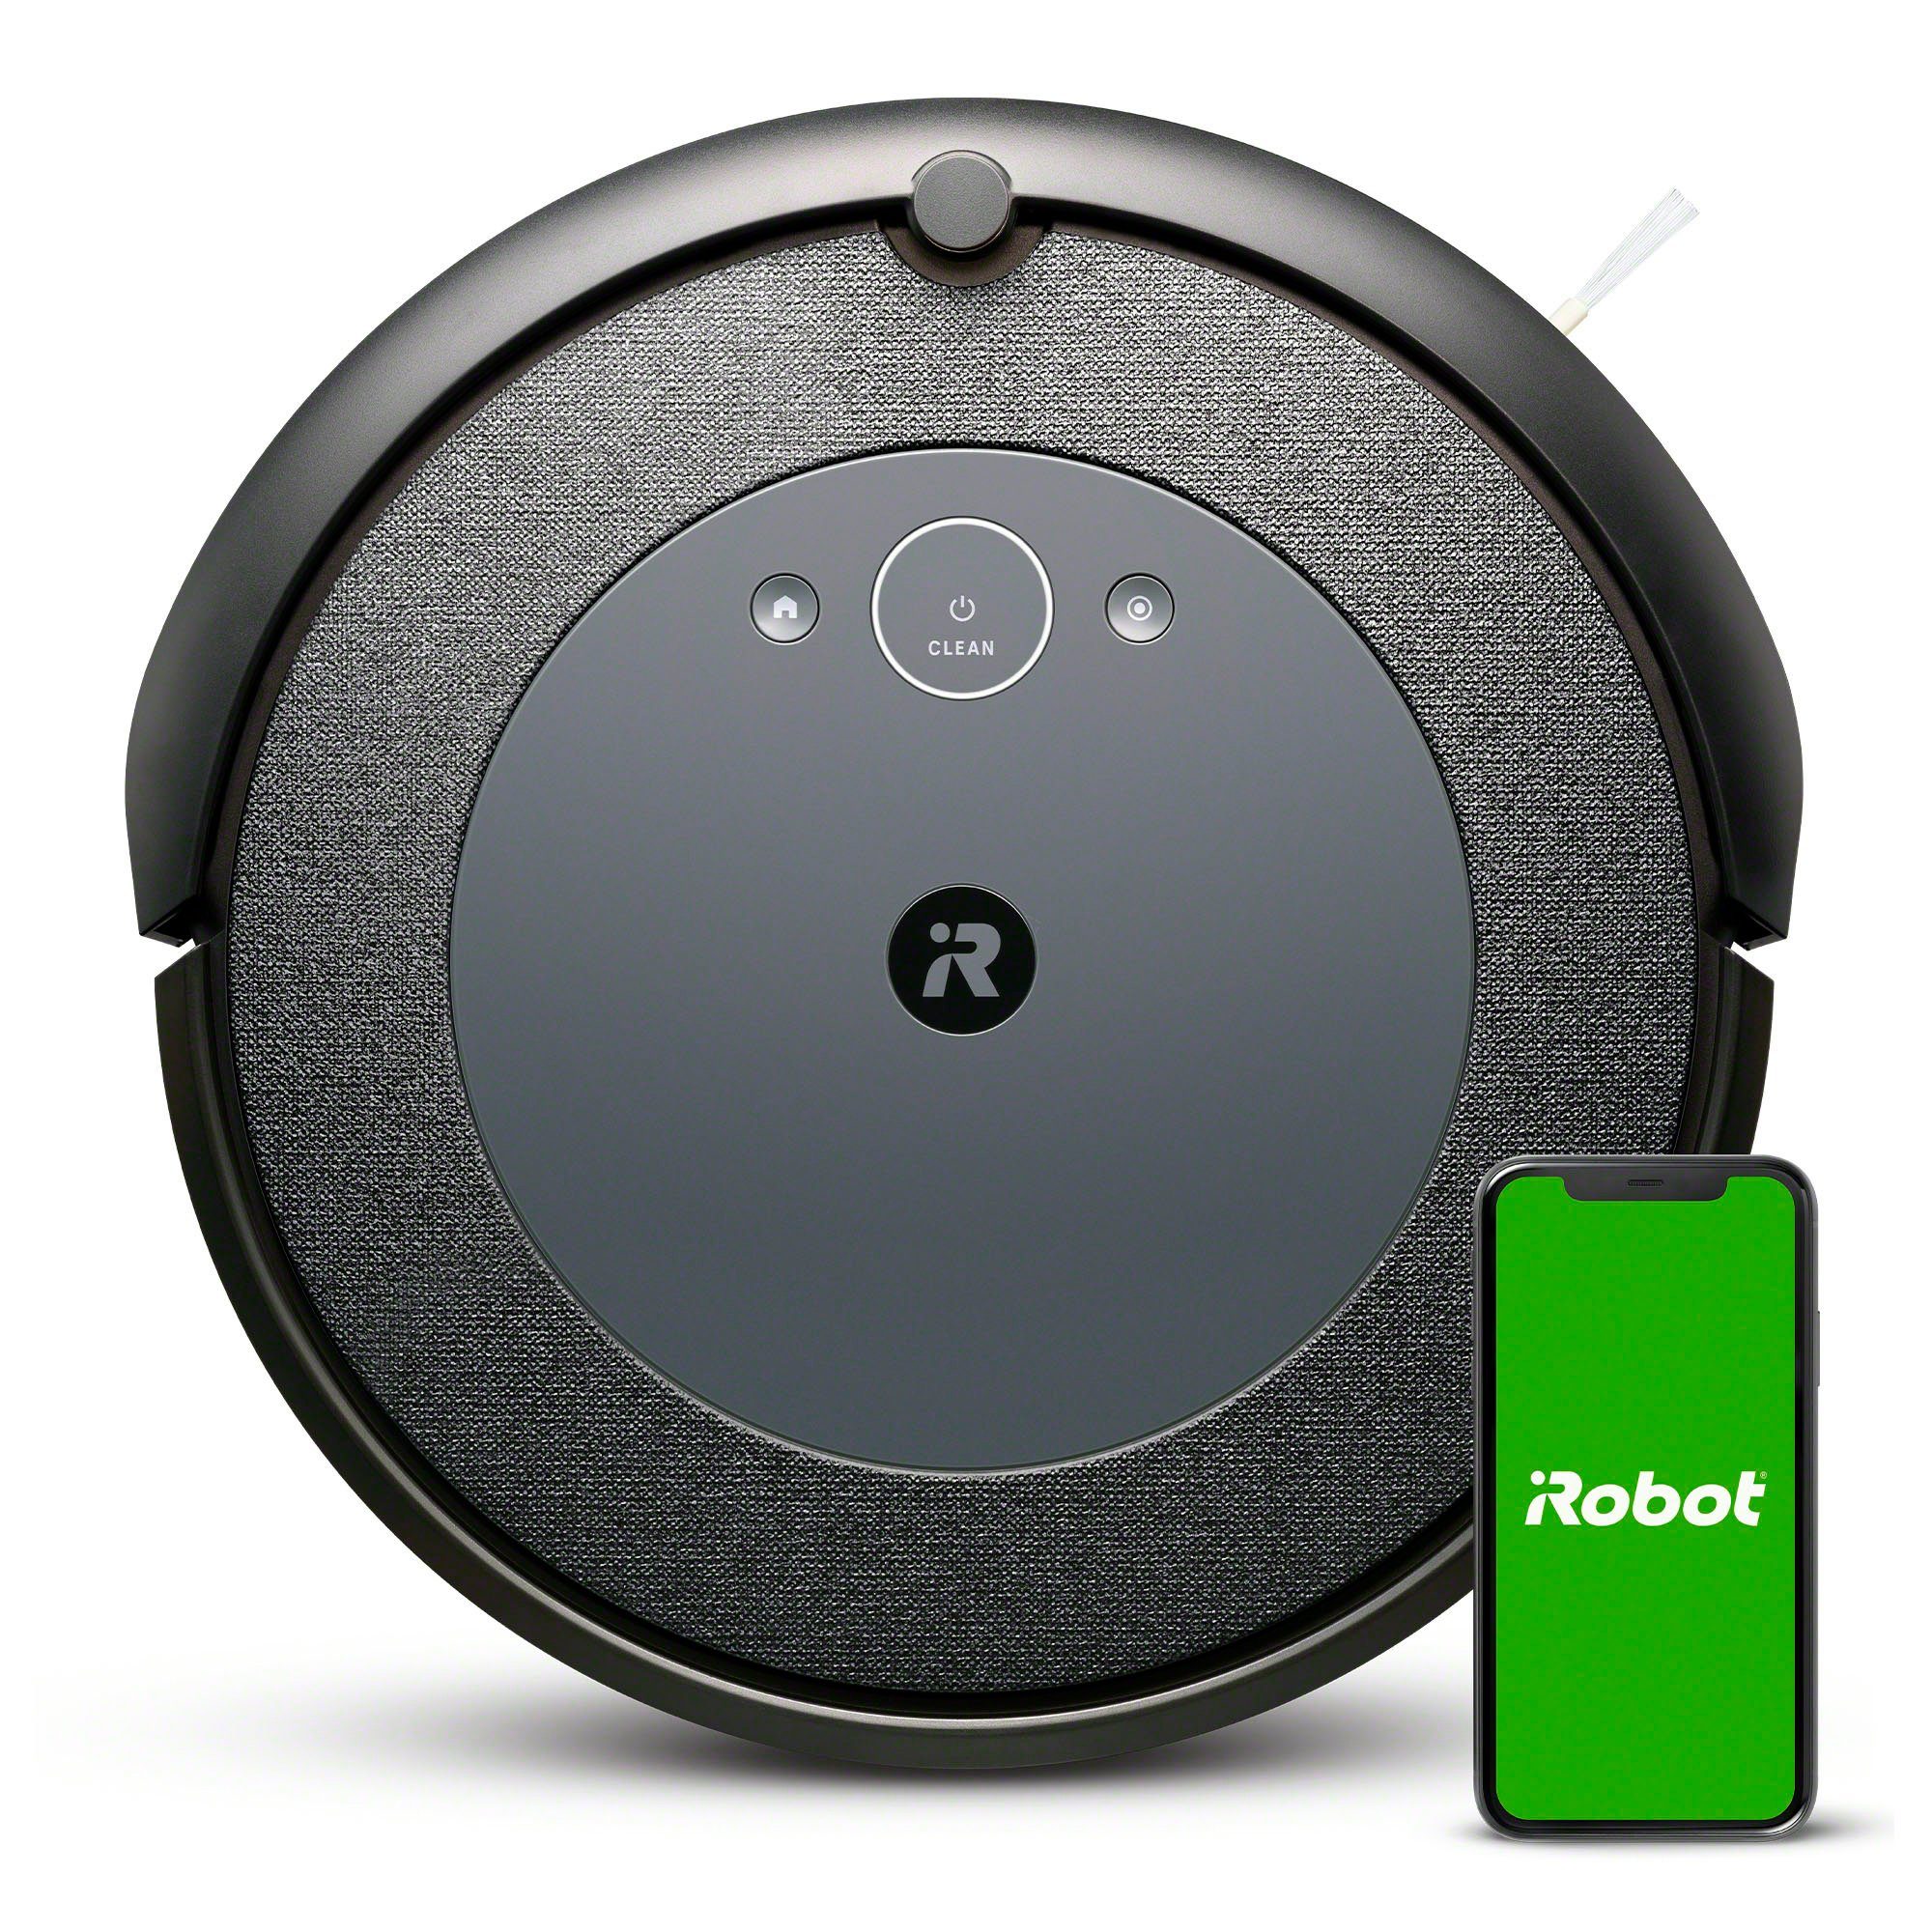 iRobot Saugroboter Roomba i5 (i5154), Einzelraumkartierung, App-/Sprachsteuerung beutellos